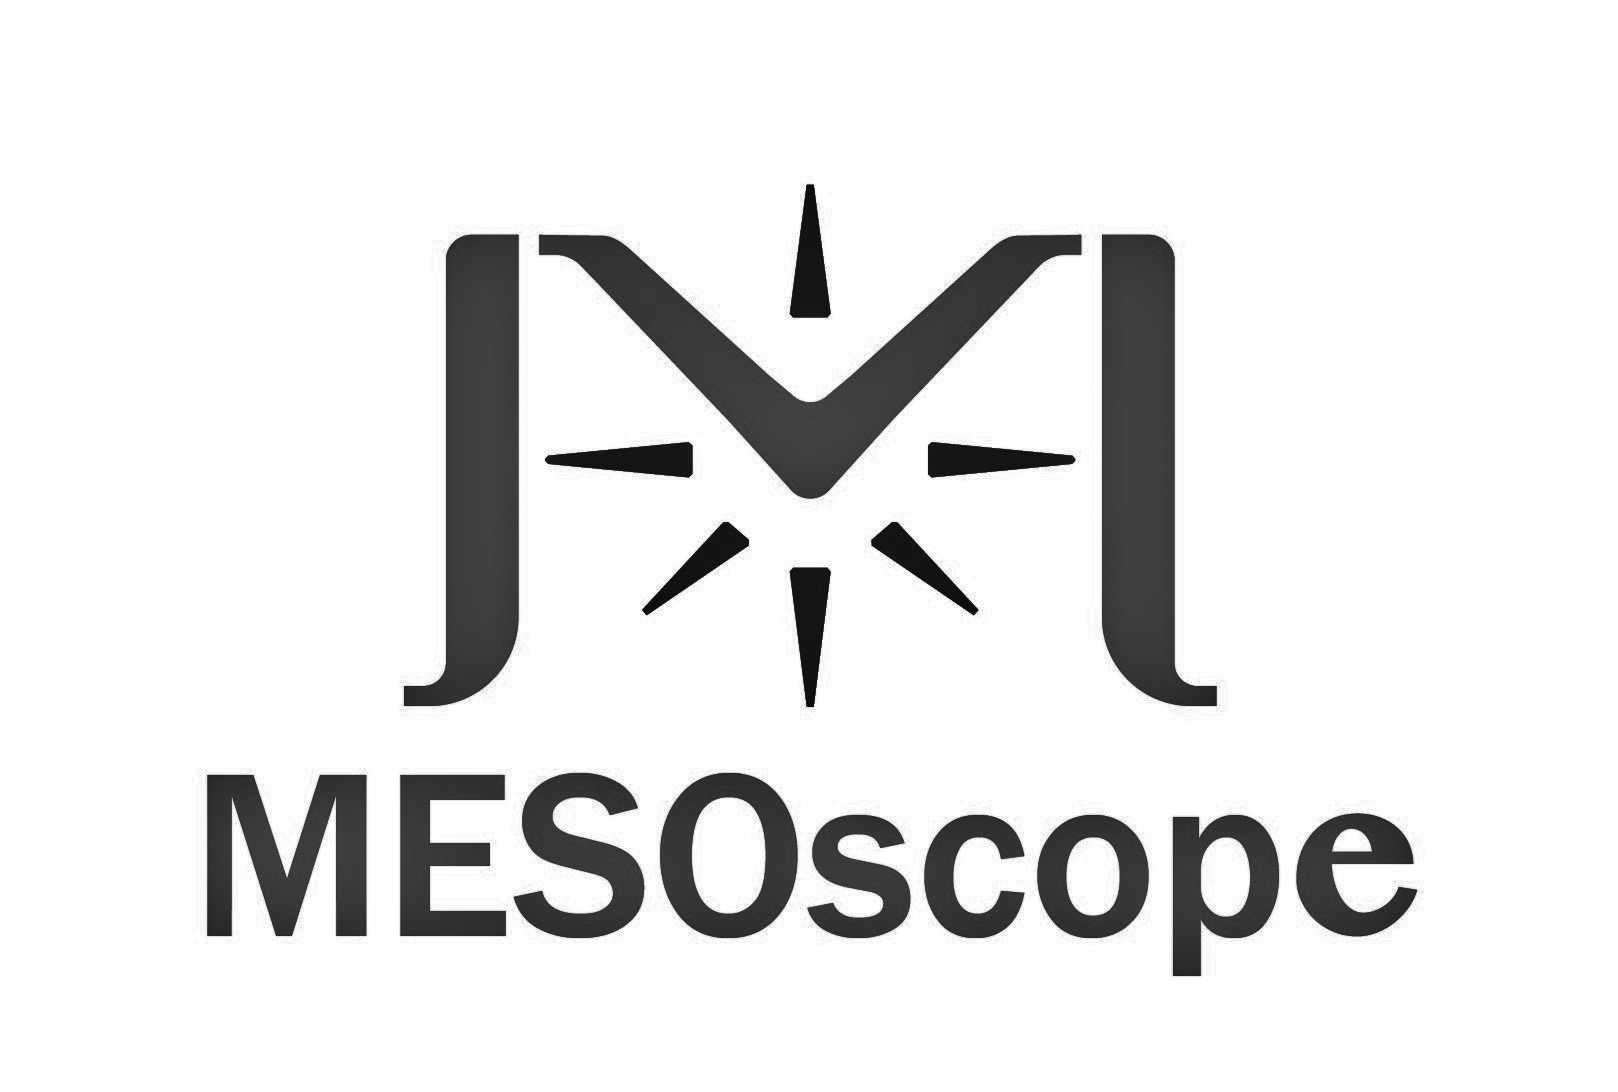 MESOSCOPE